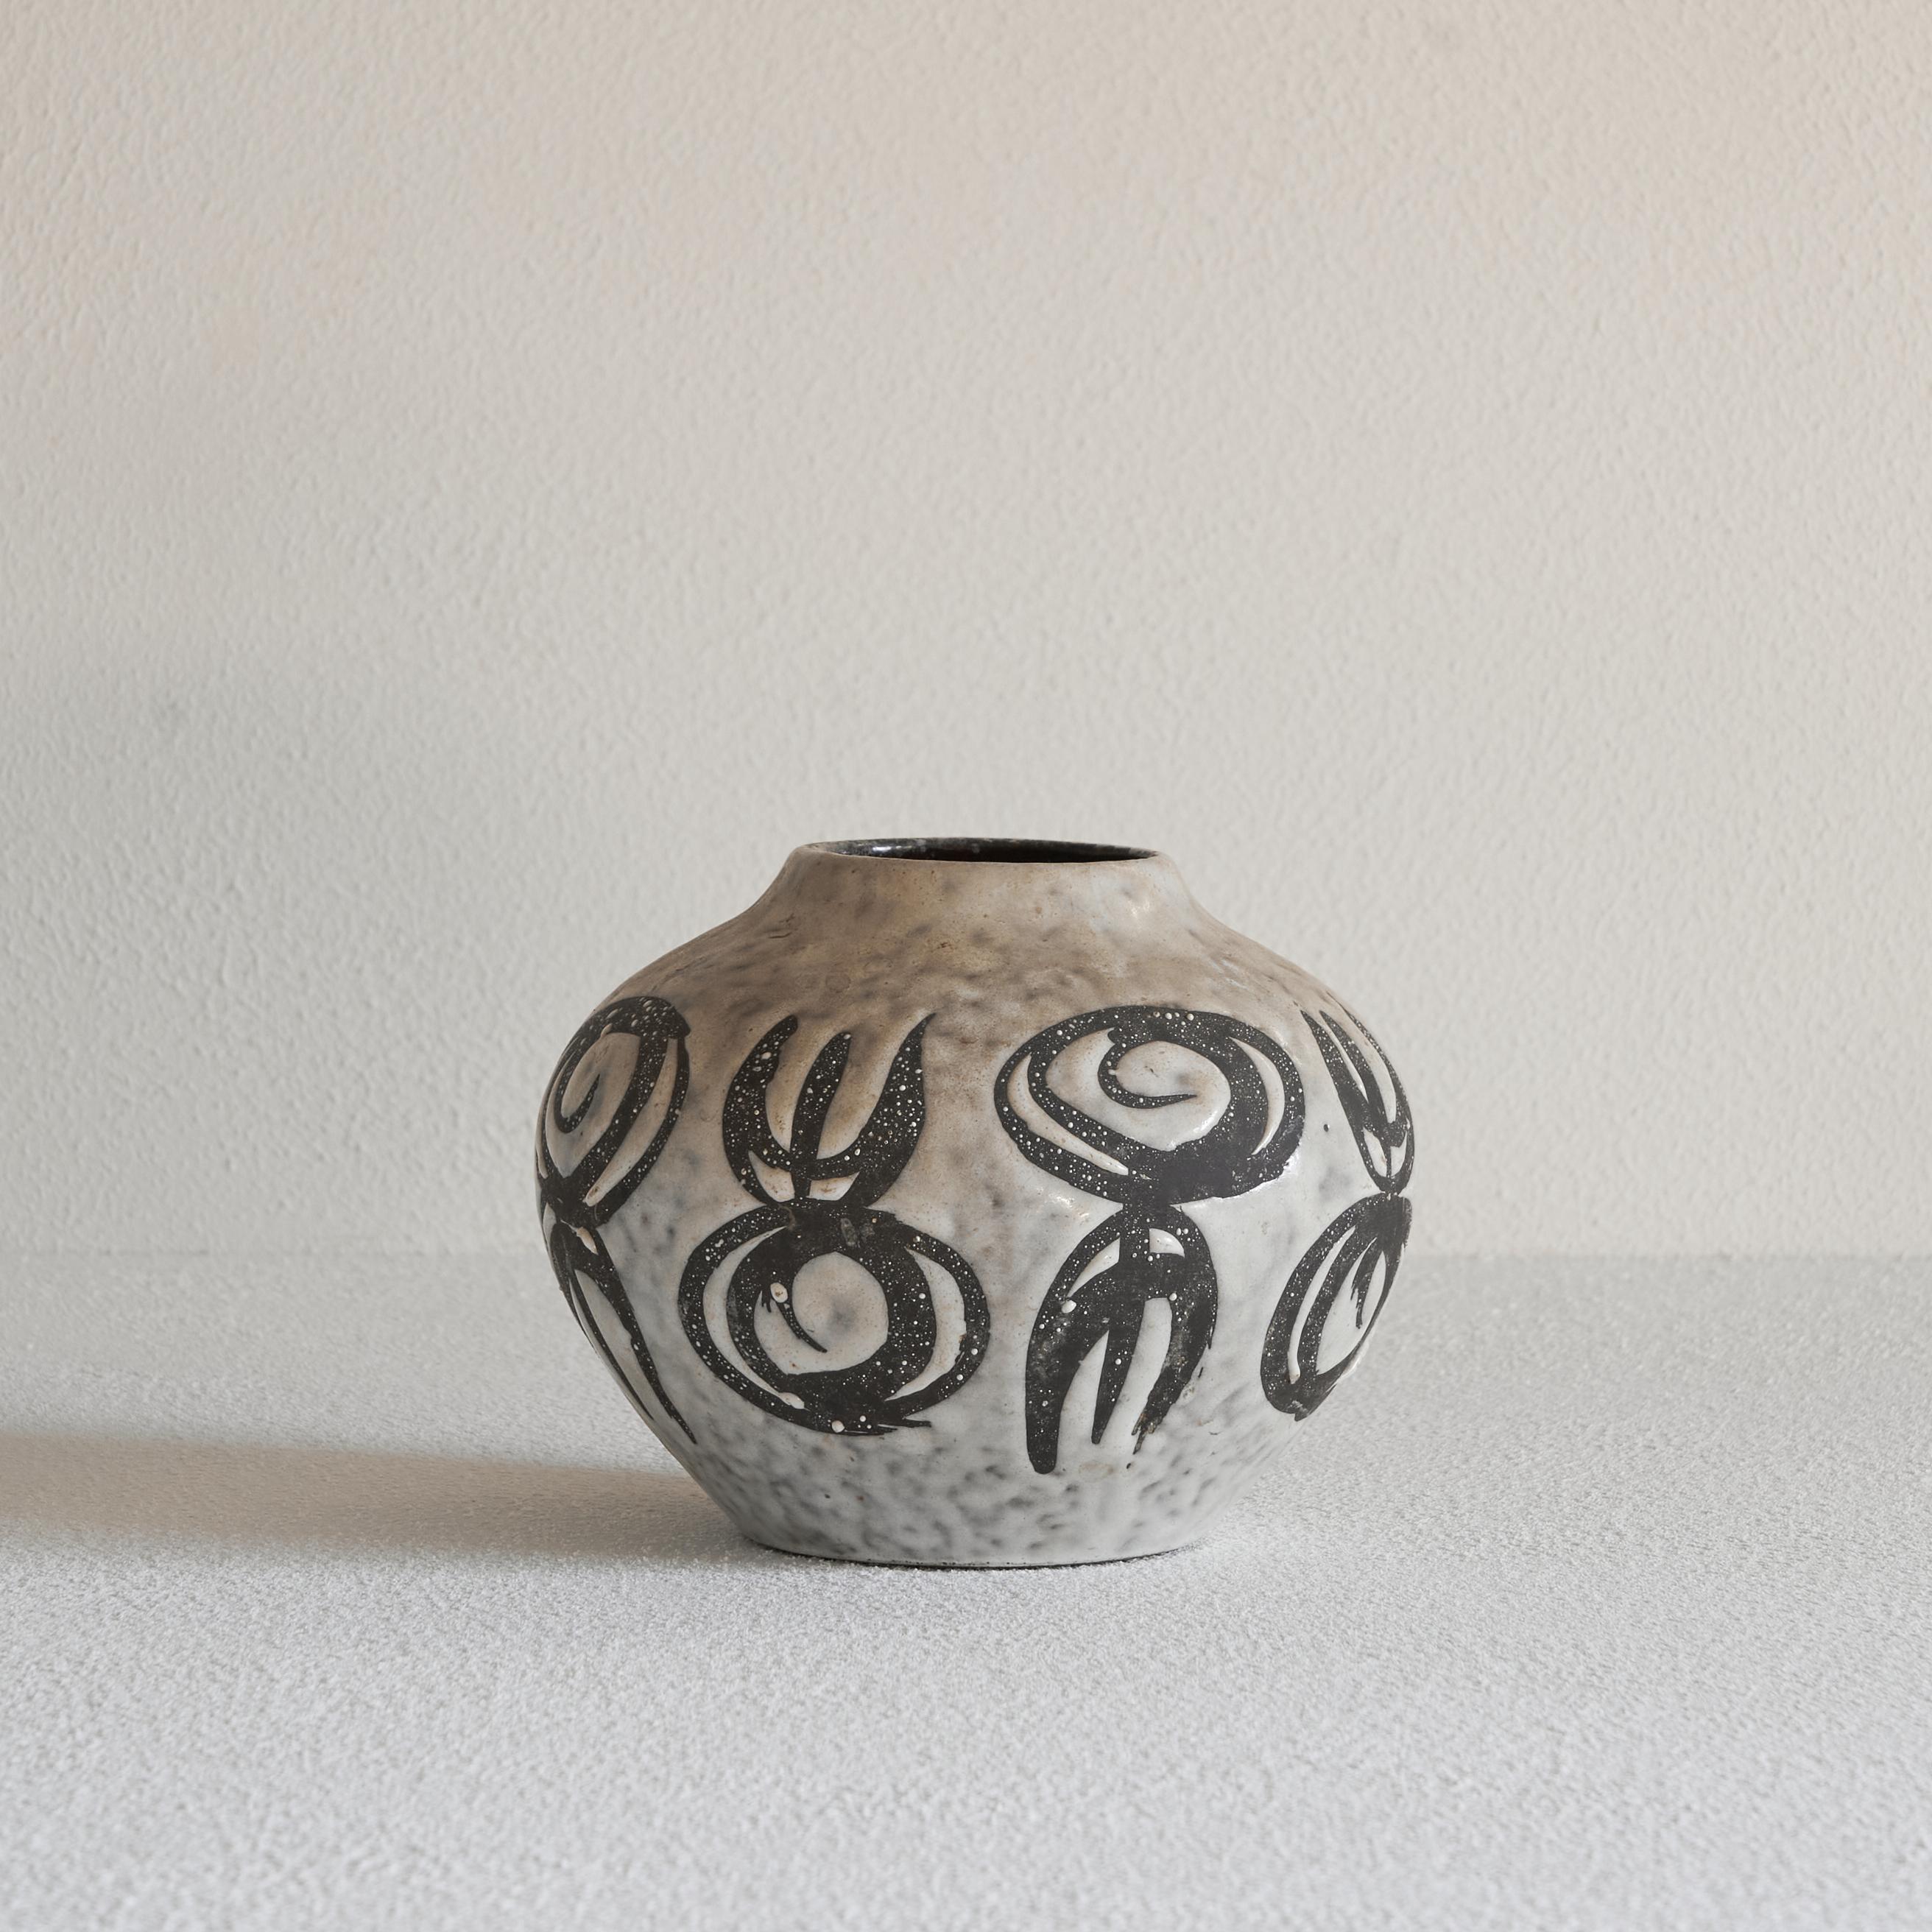 Vase en poterie de studio allemand du milieu du siècle 1960.

Il s'agit d'un vase en poterie de studio allemande du milieu du siècle dernier, au décor abstrait et sculptural intéressant, fabriqué par Jasba Keramik dans les années 1960. 

Bon état